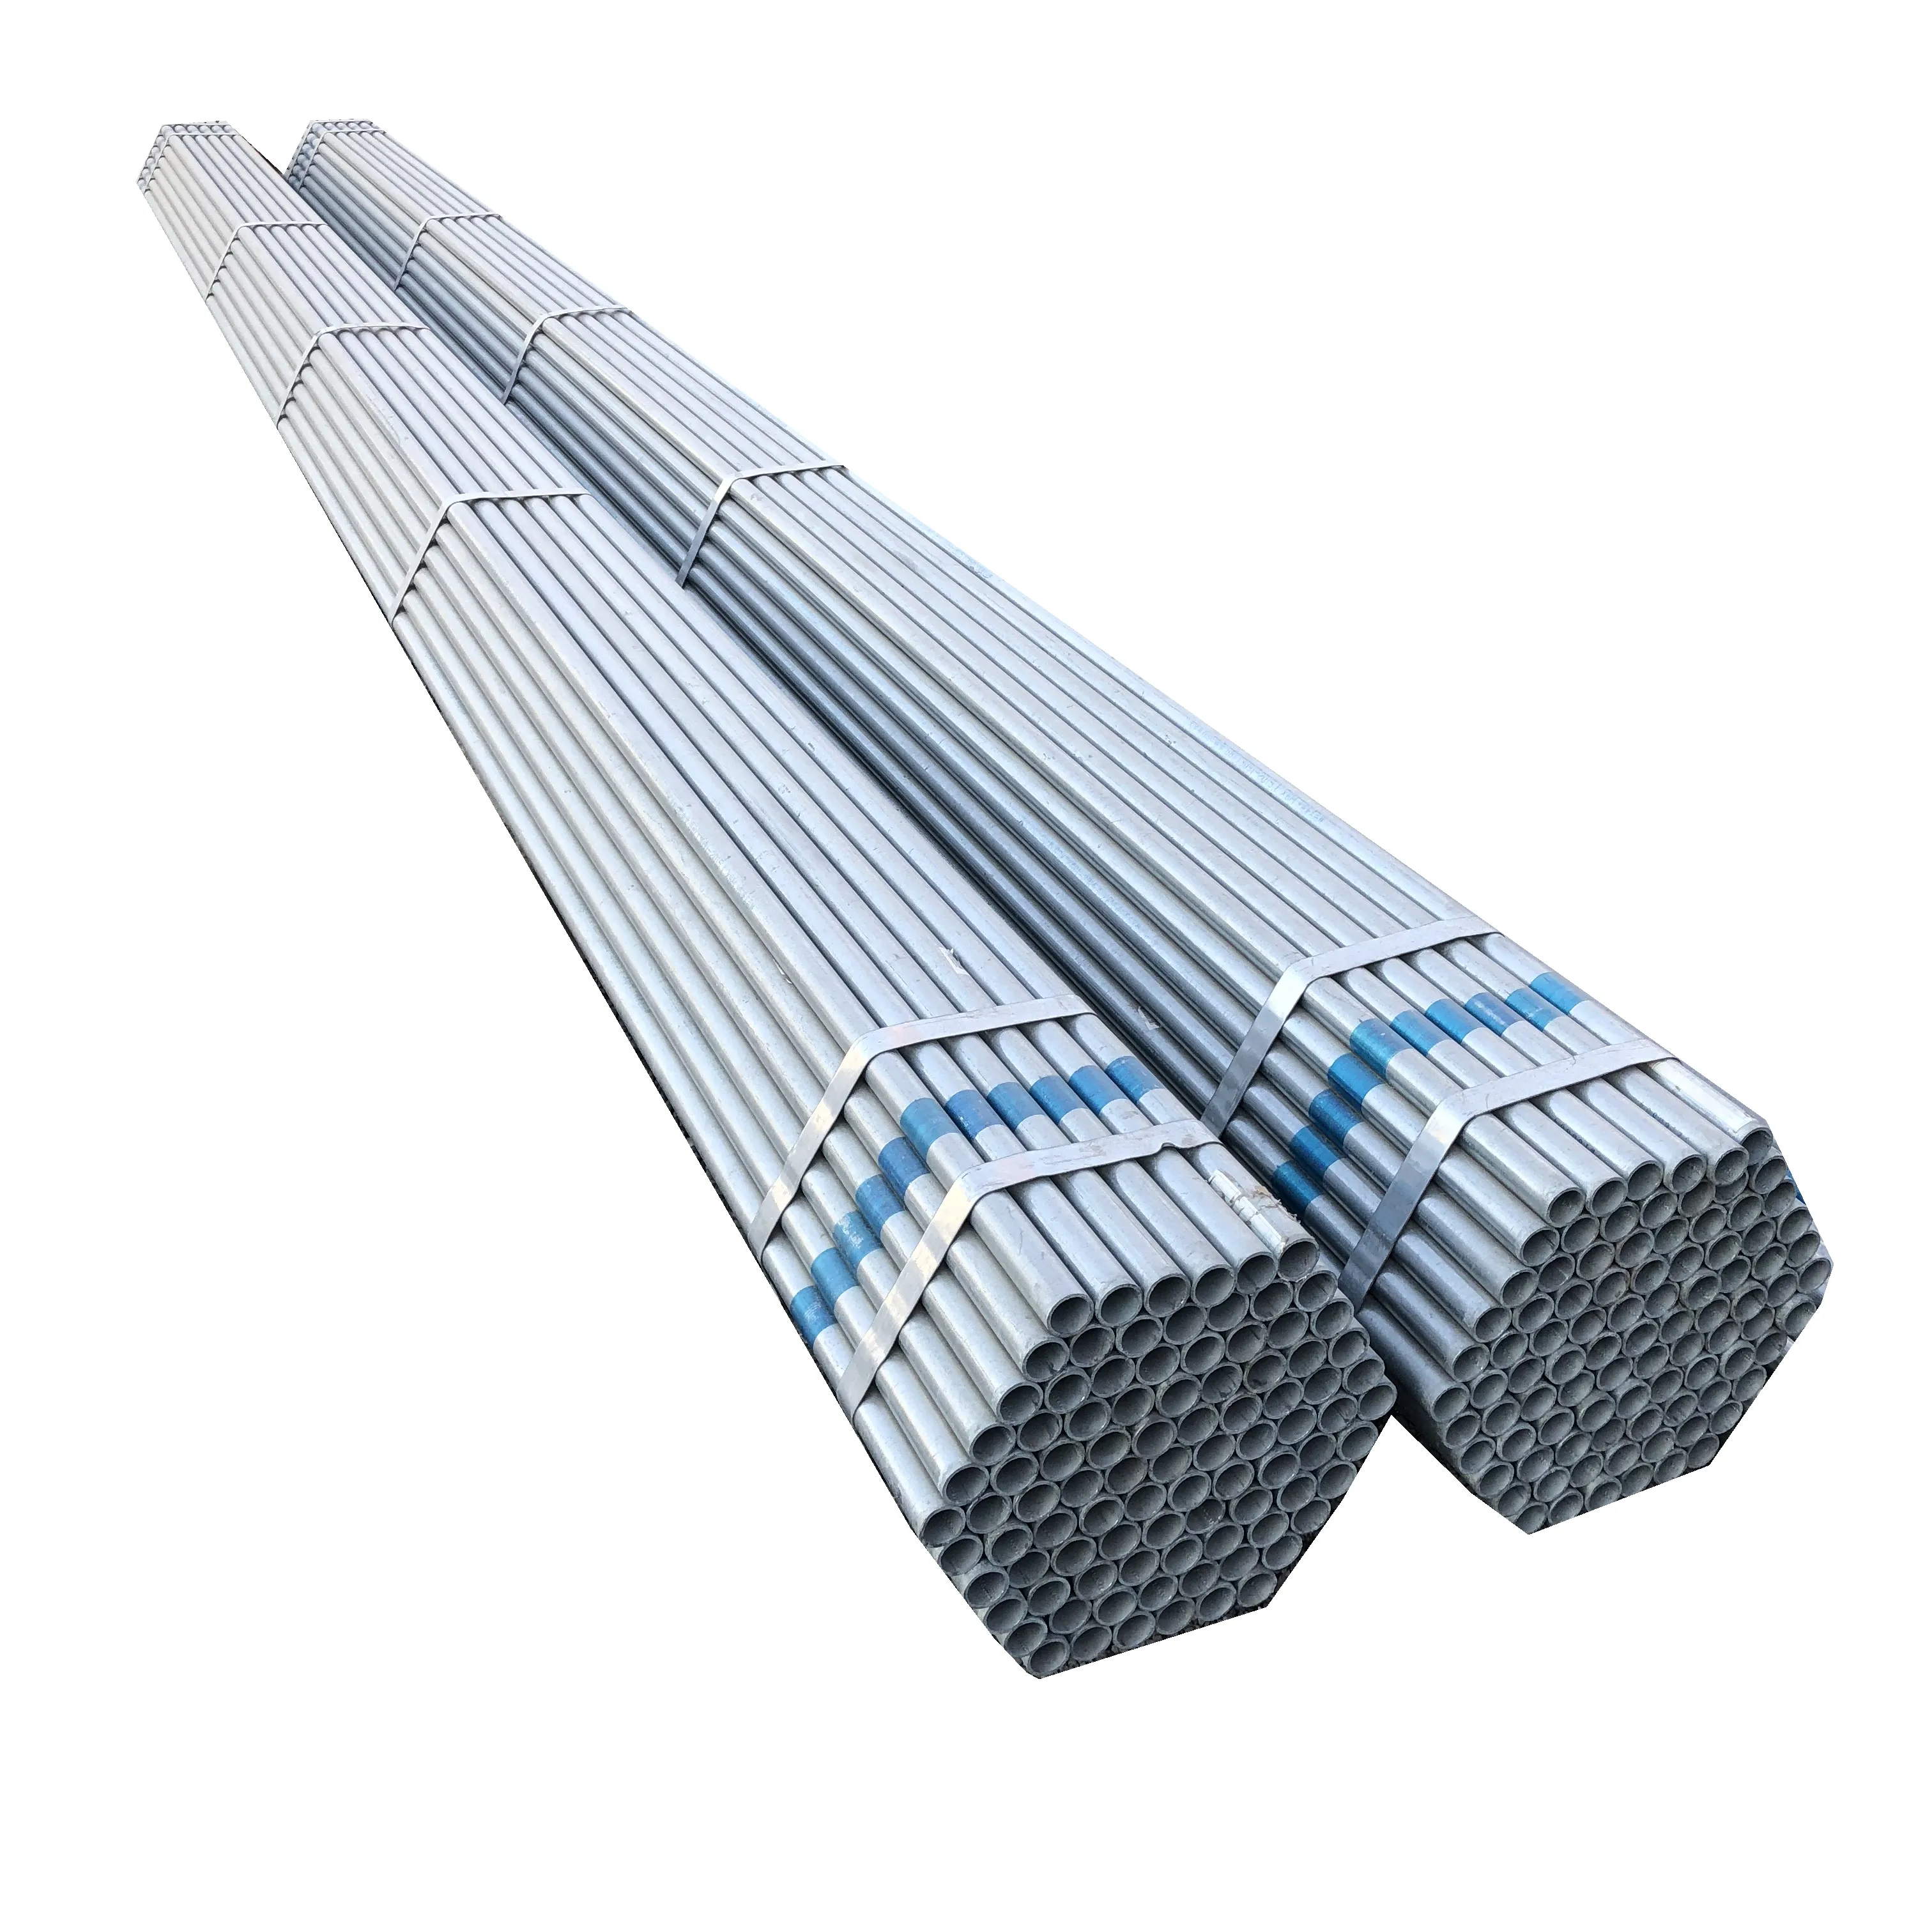 מגולוון פלדת צינור פיגומים עגול חם טבל gi galvan פלדת צינור לבניית ASTM מראש מגולוון פלדת צינור